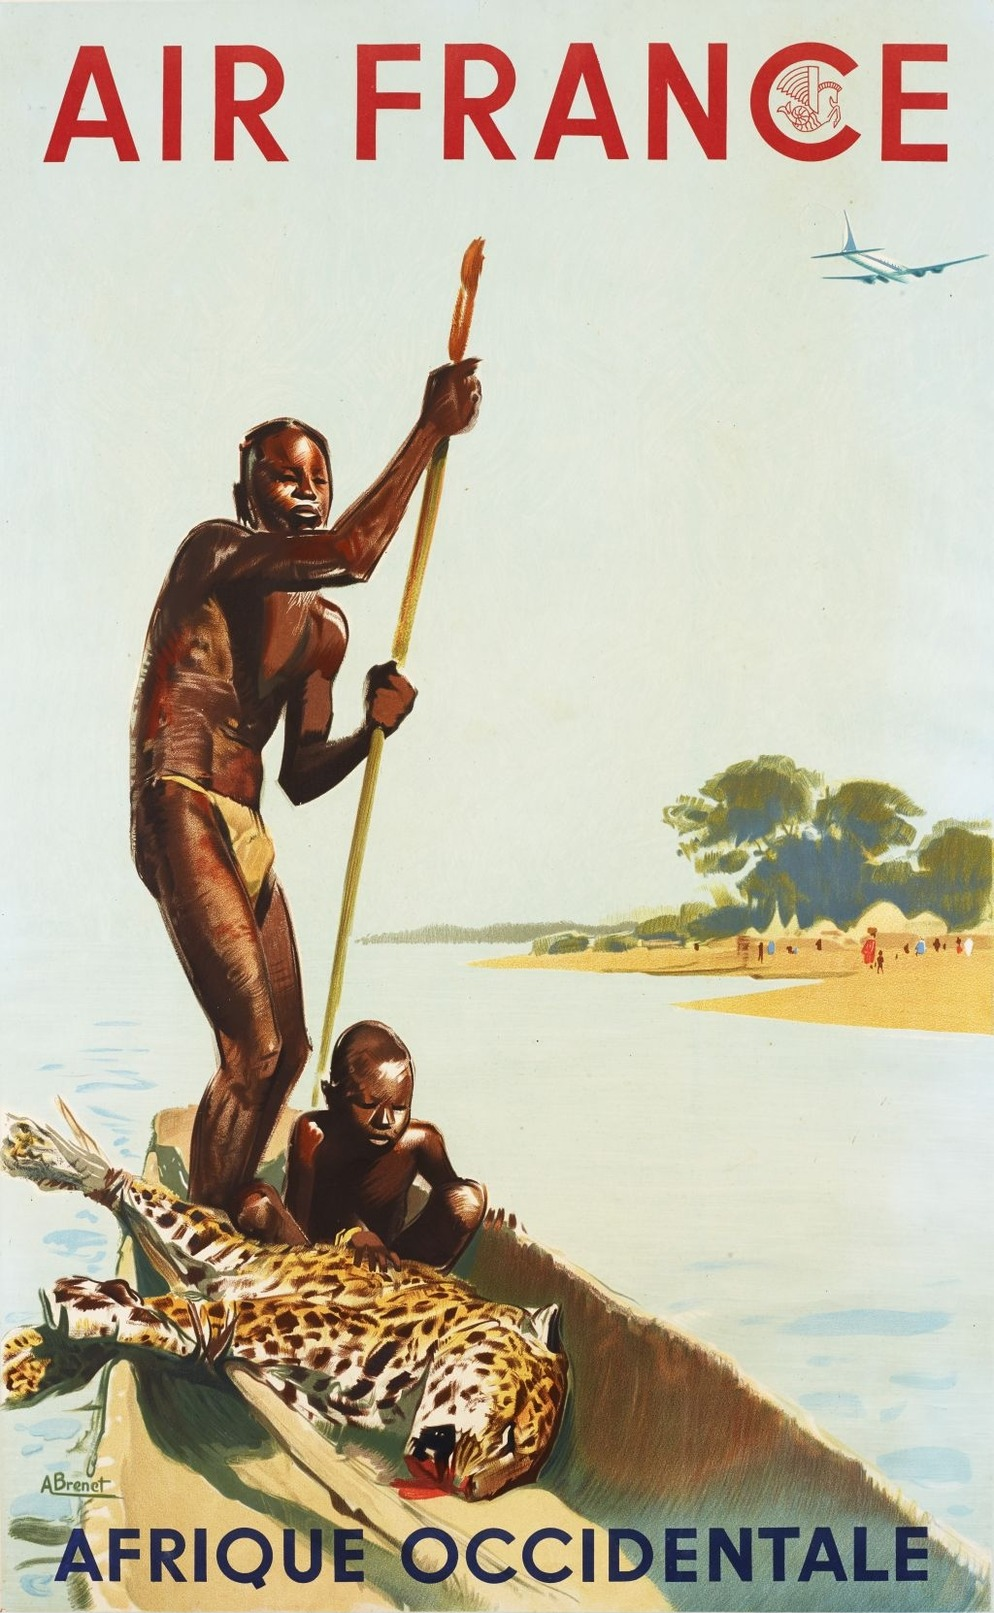 Air France Afrique Occidentale - Postcard - Poster Reproduction - Publicité